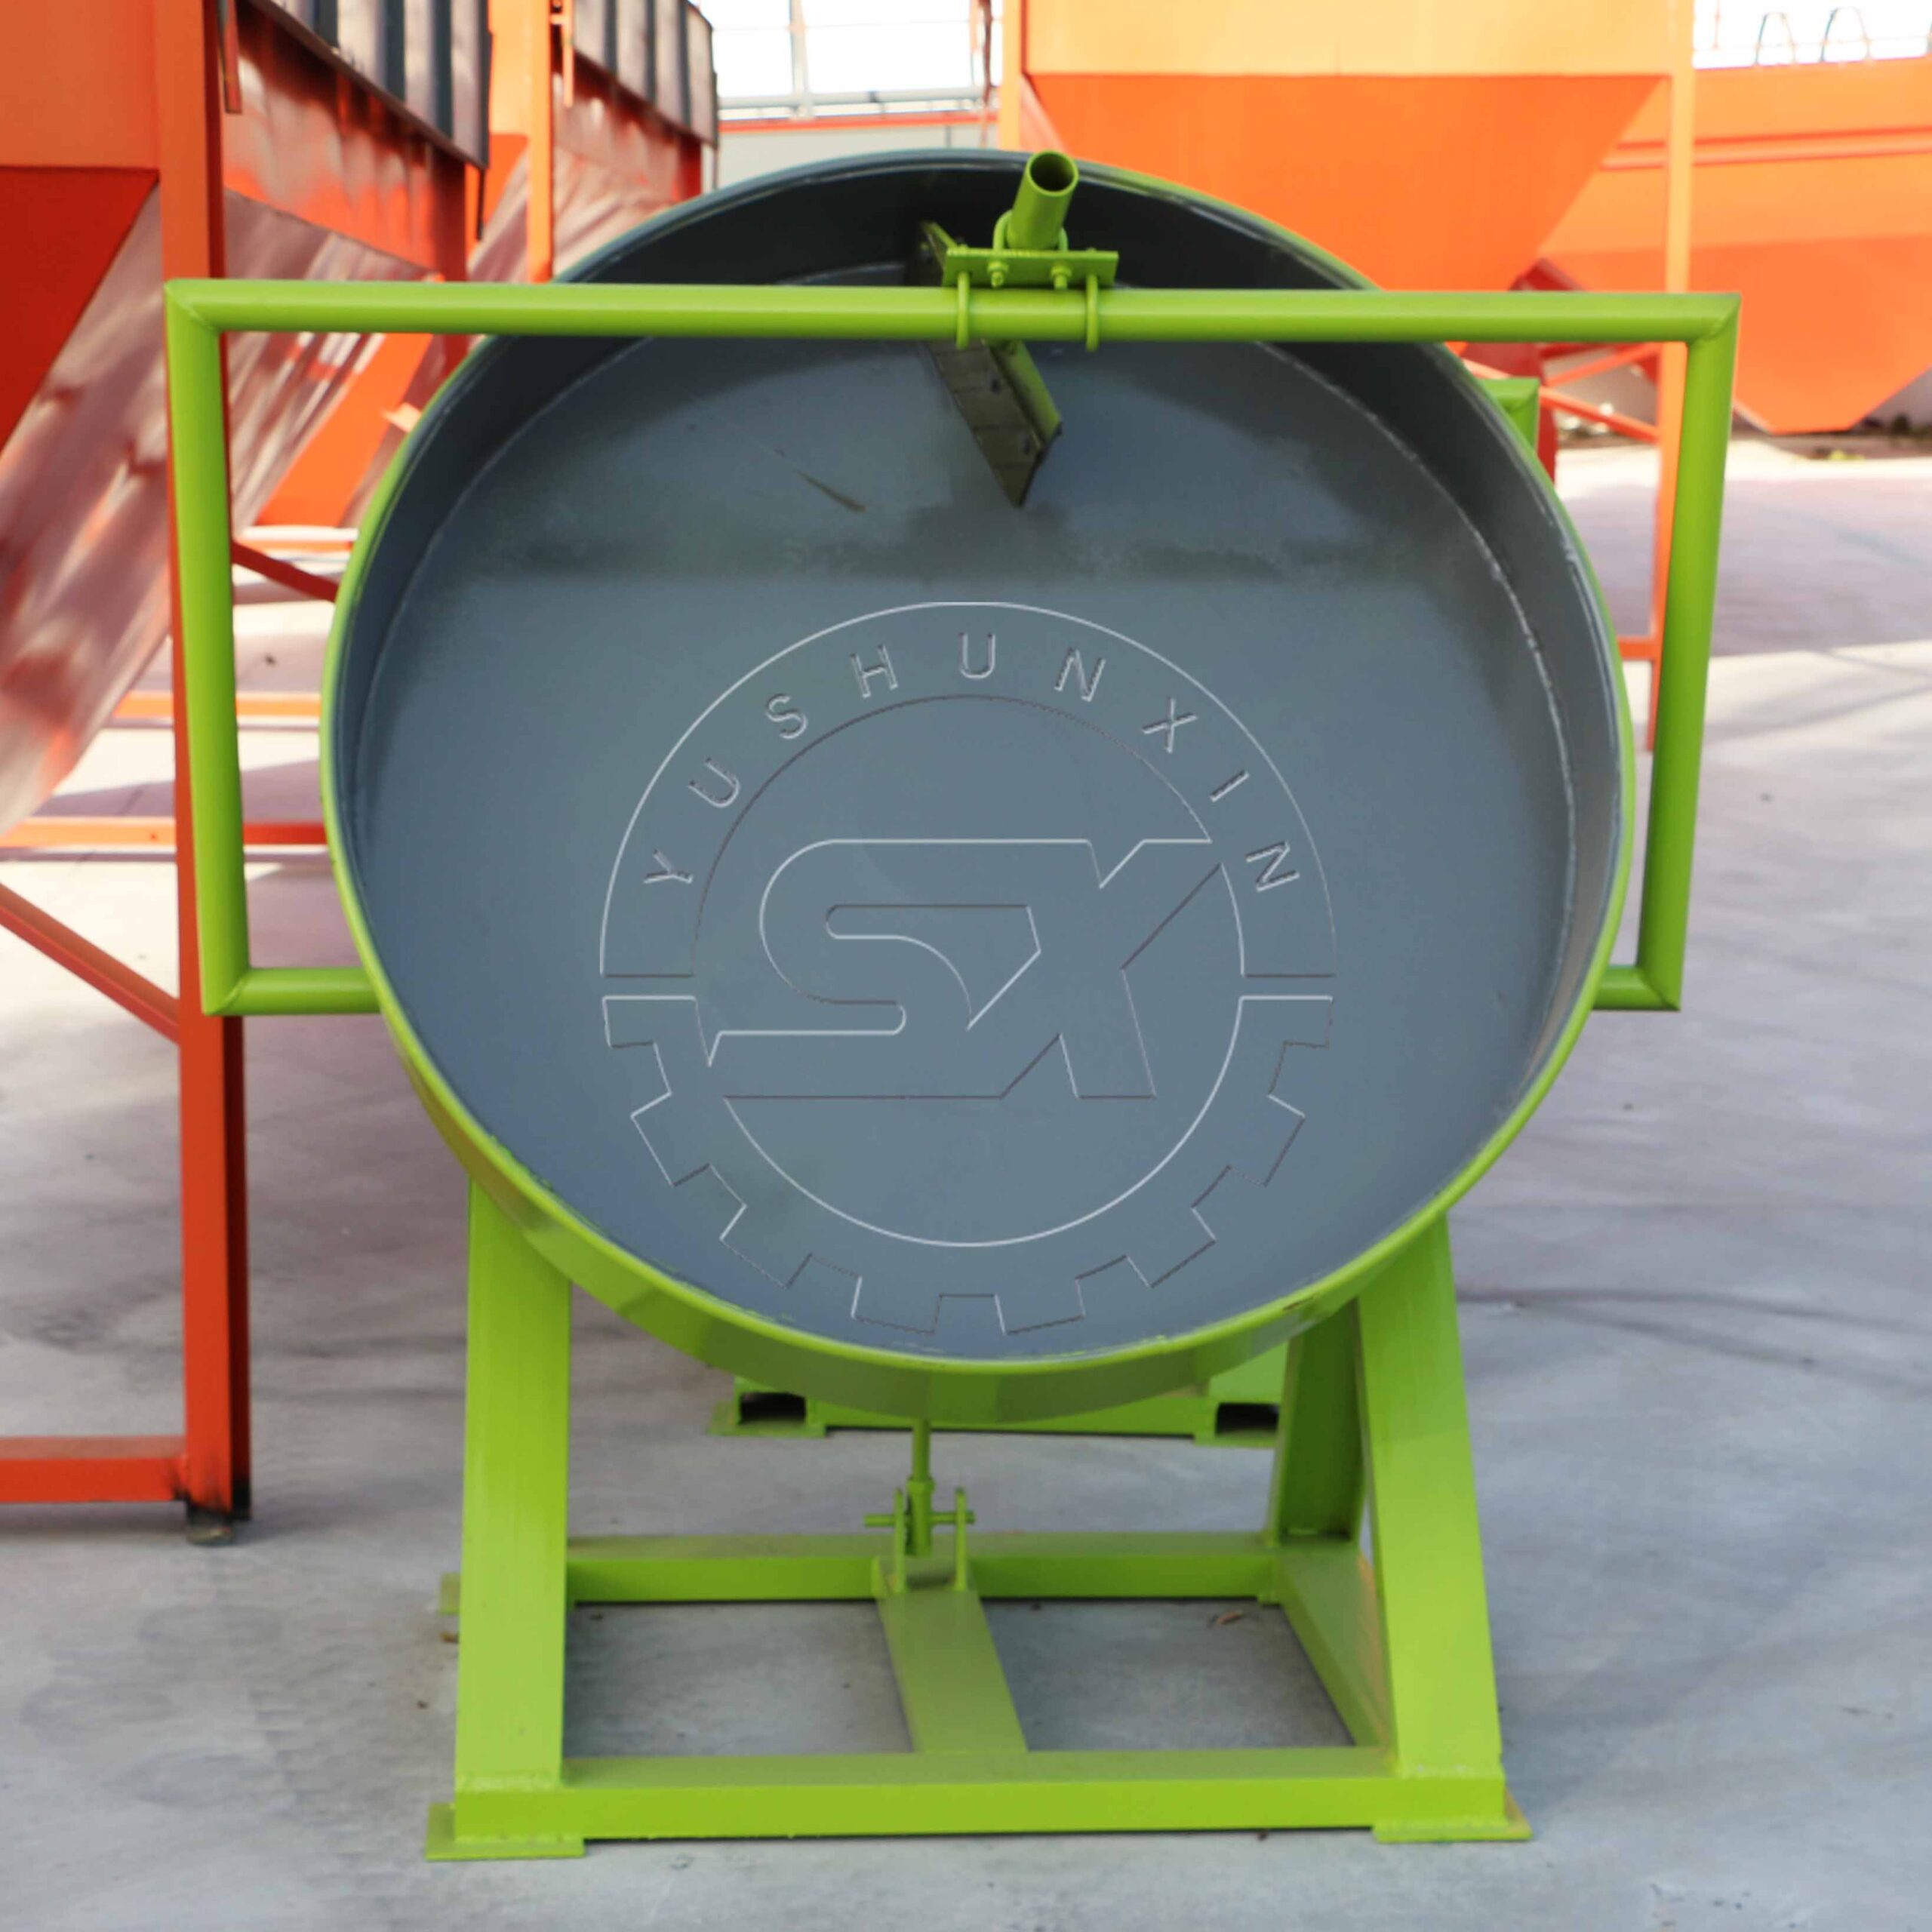 pan granulation machine for making organic fertilizer